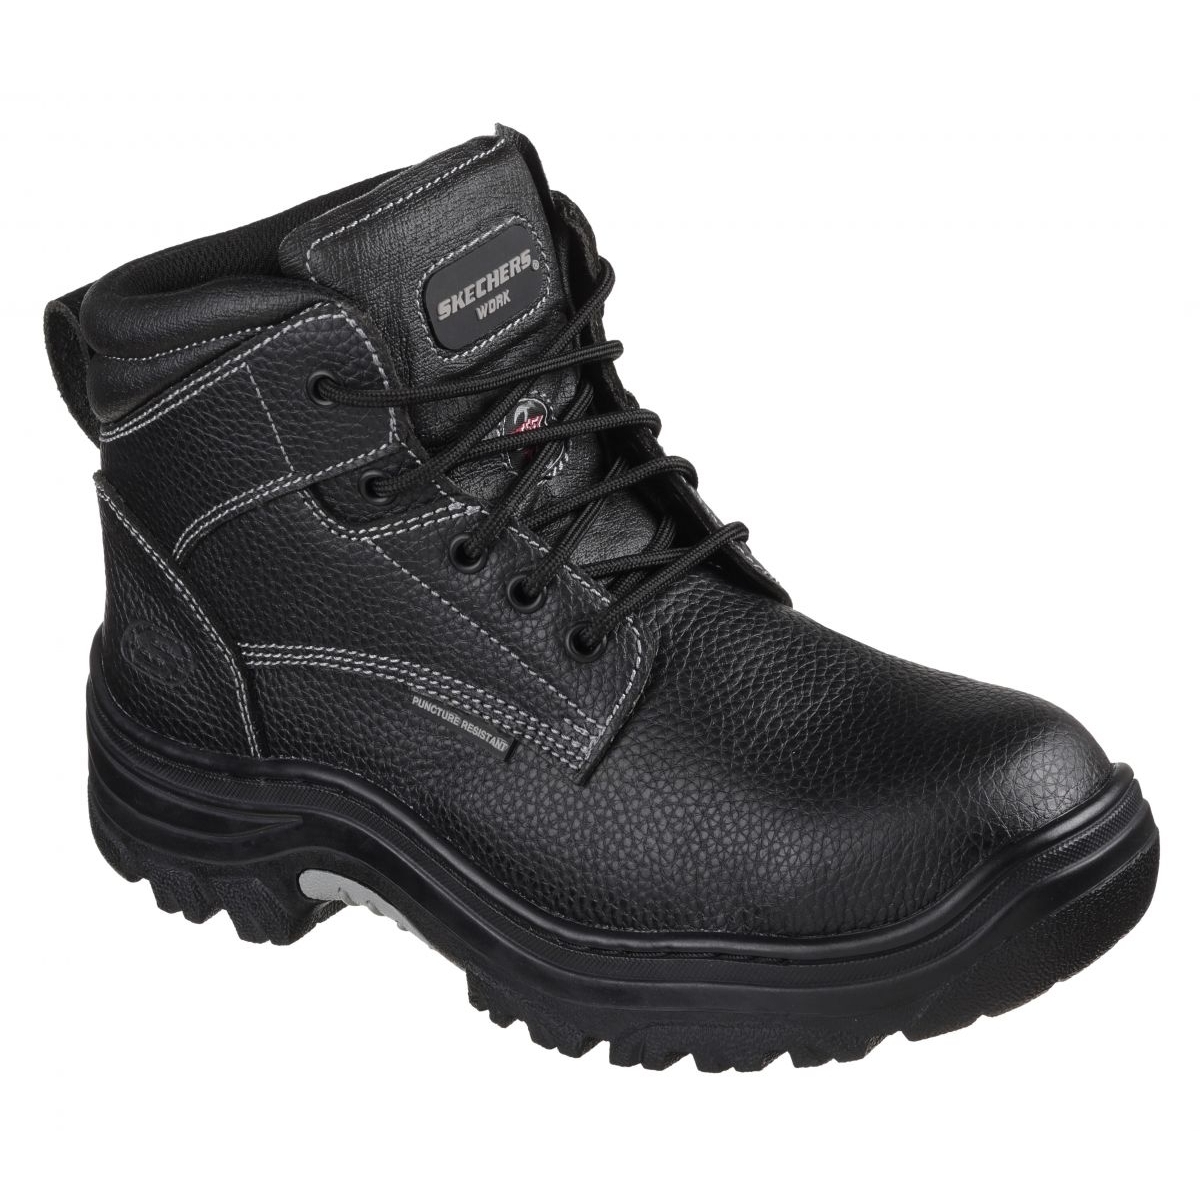 Skechers Men's Burgin-Tarlac Industrial Boot Varies BLACK - BLACK, 8.5 Wide